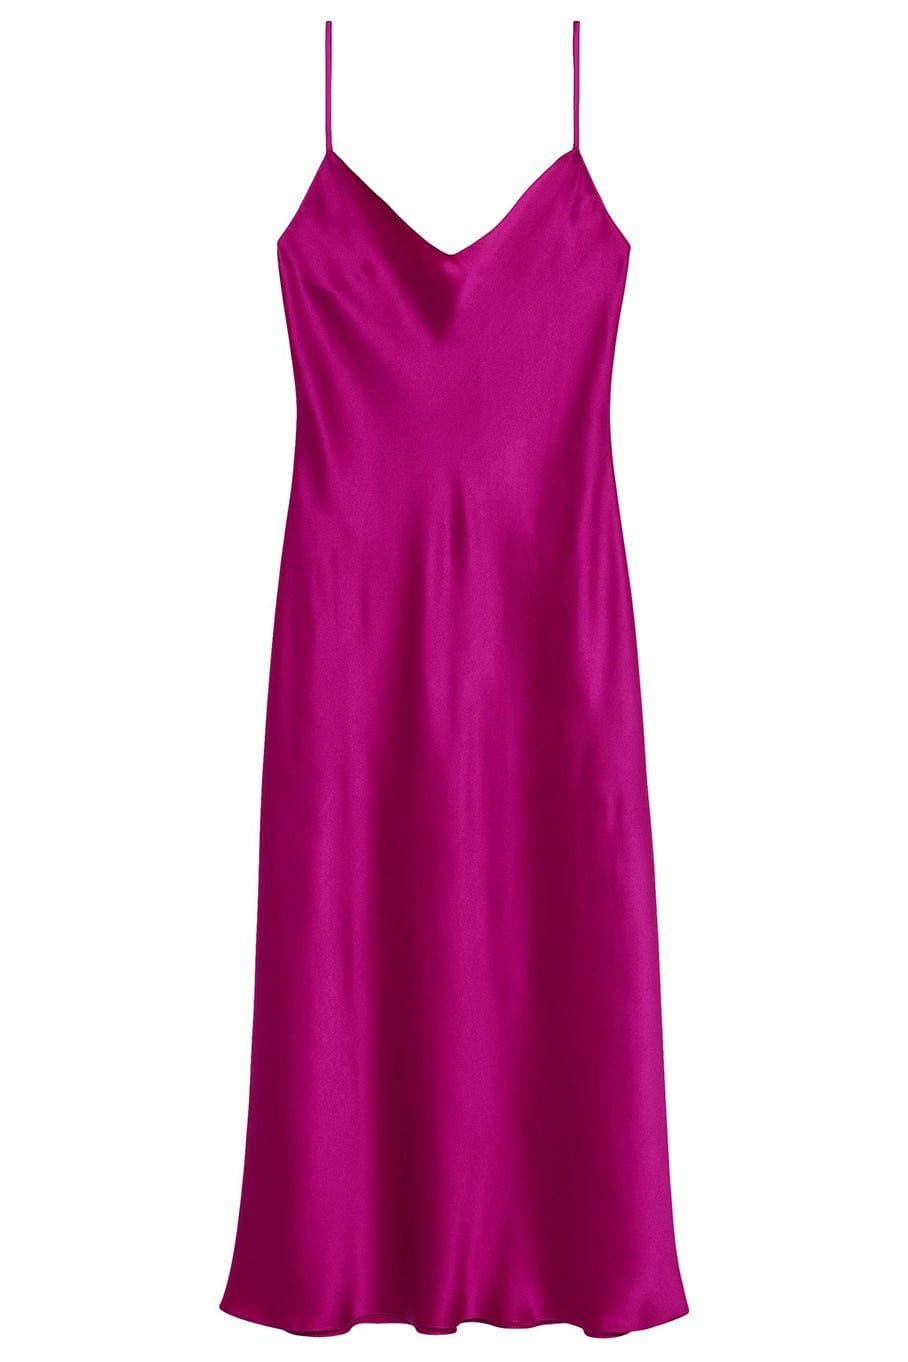 Taylor Silk Slip Dress CLOTHINGDRESSCASUAL SABLYN   